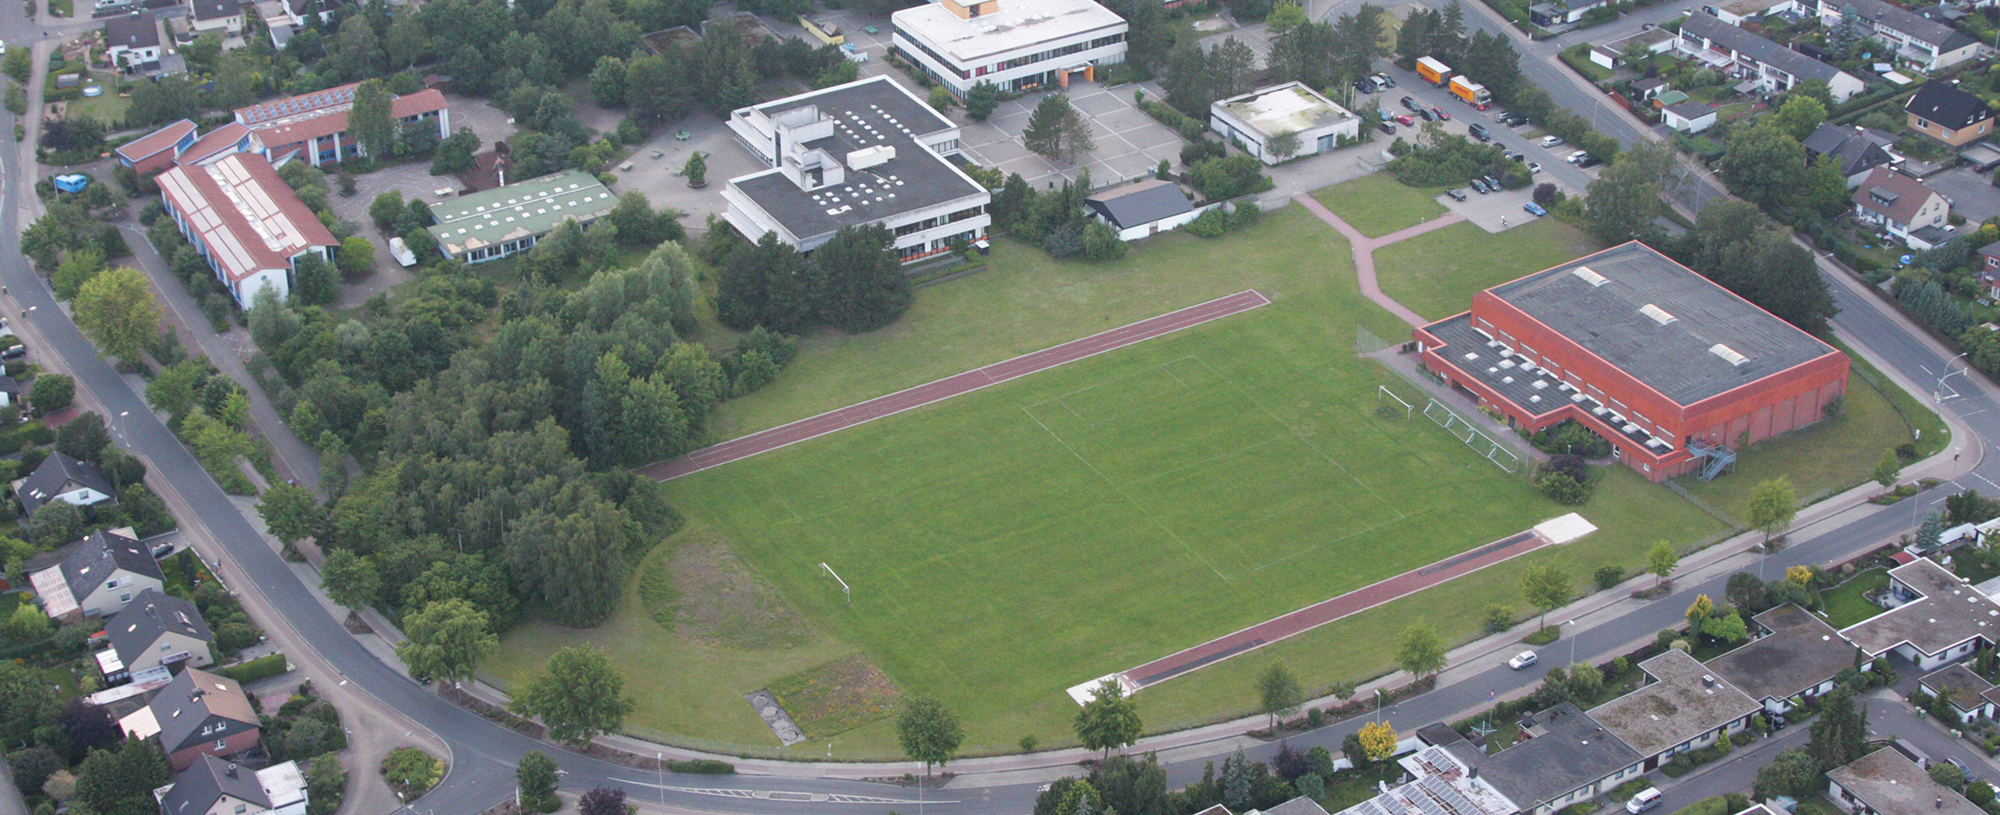 Sportanlagen in Gifhorn, Quelle: www.keller-luftfoto.de